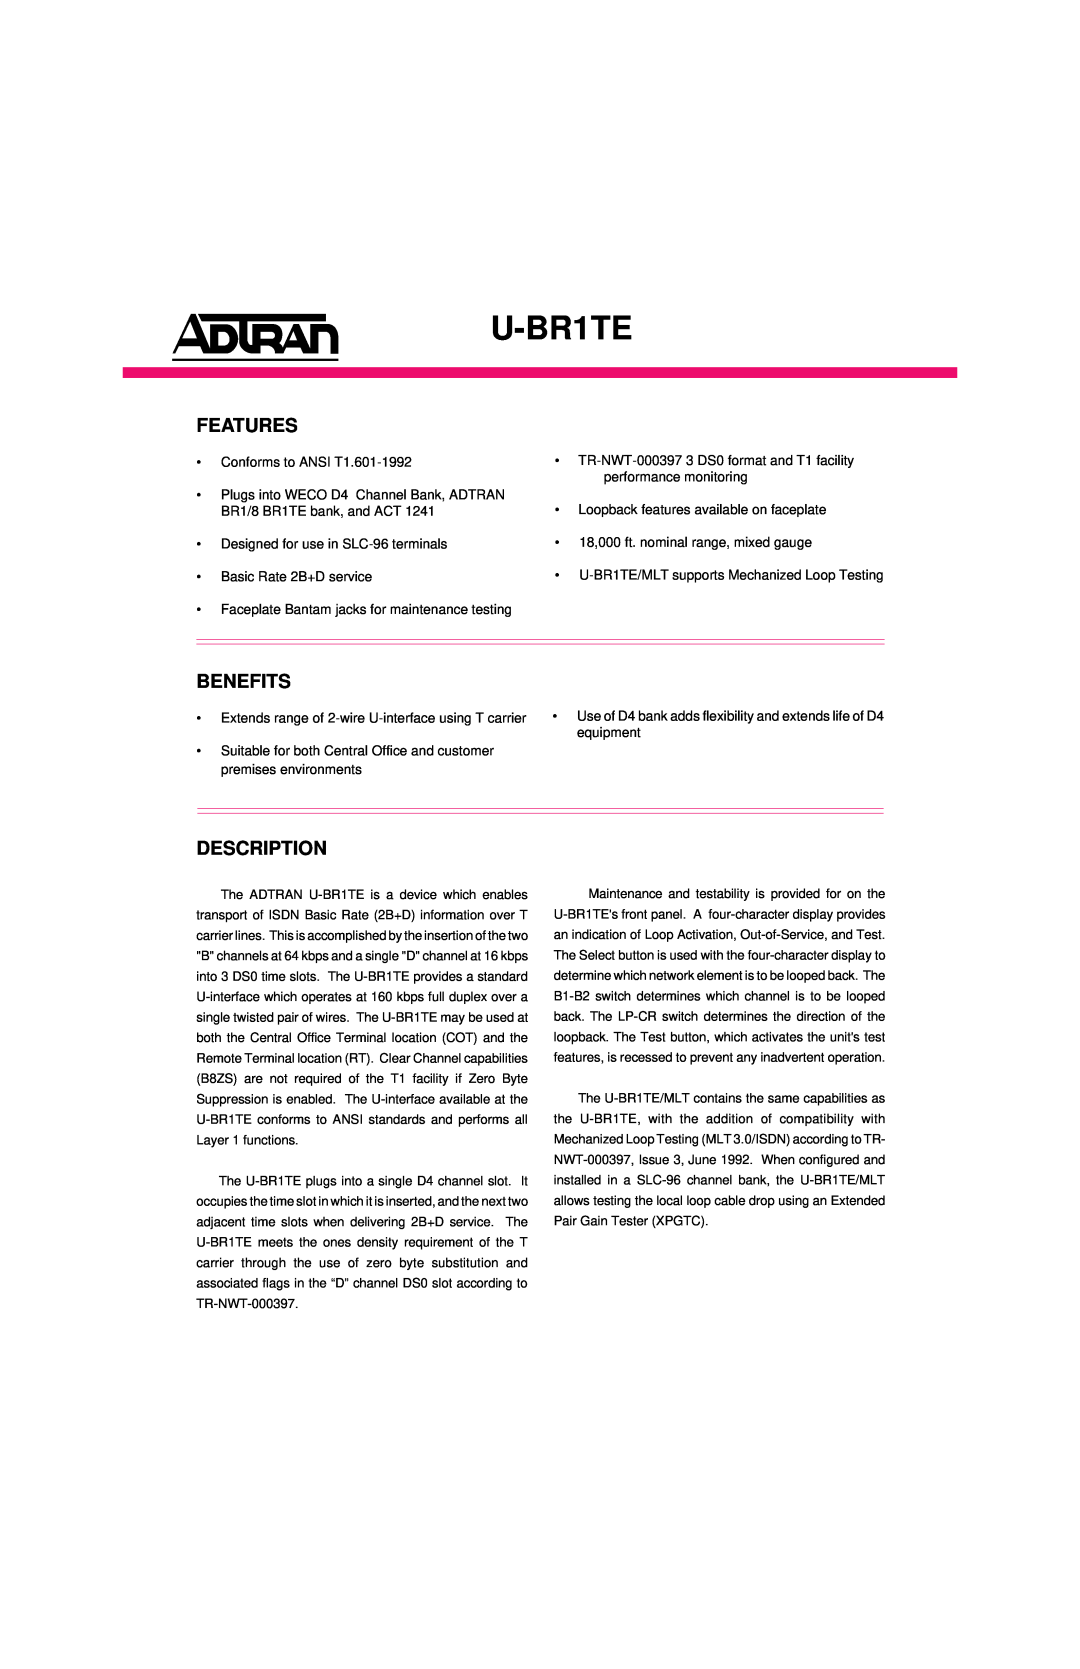 ADTRAN ISDN 2B1Q manual Features, Benefits, Description, U-BR1TE 